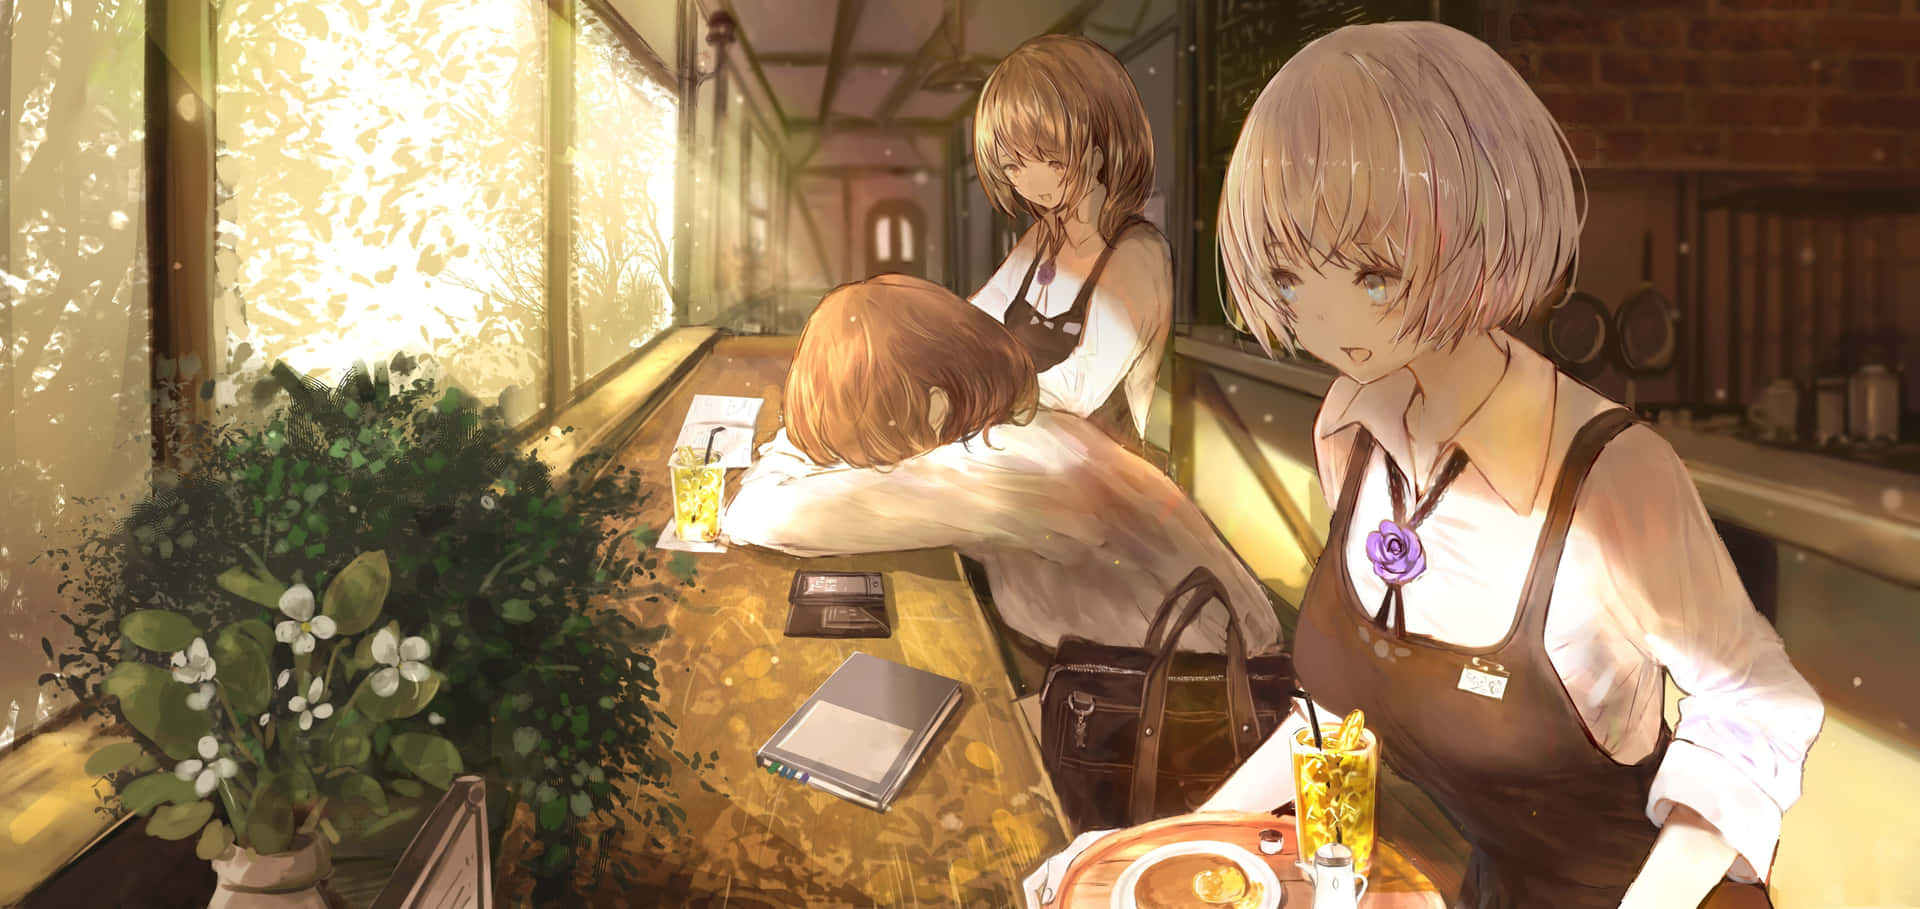 Animeschüler In Einem Café Wallpaper